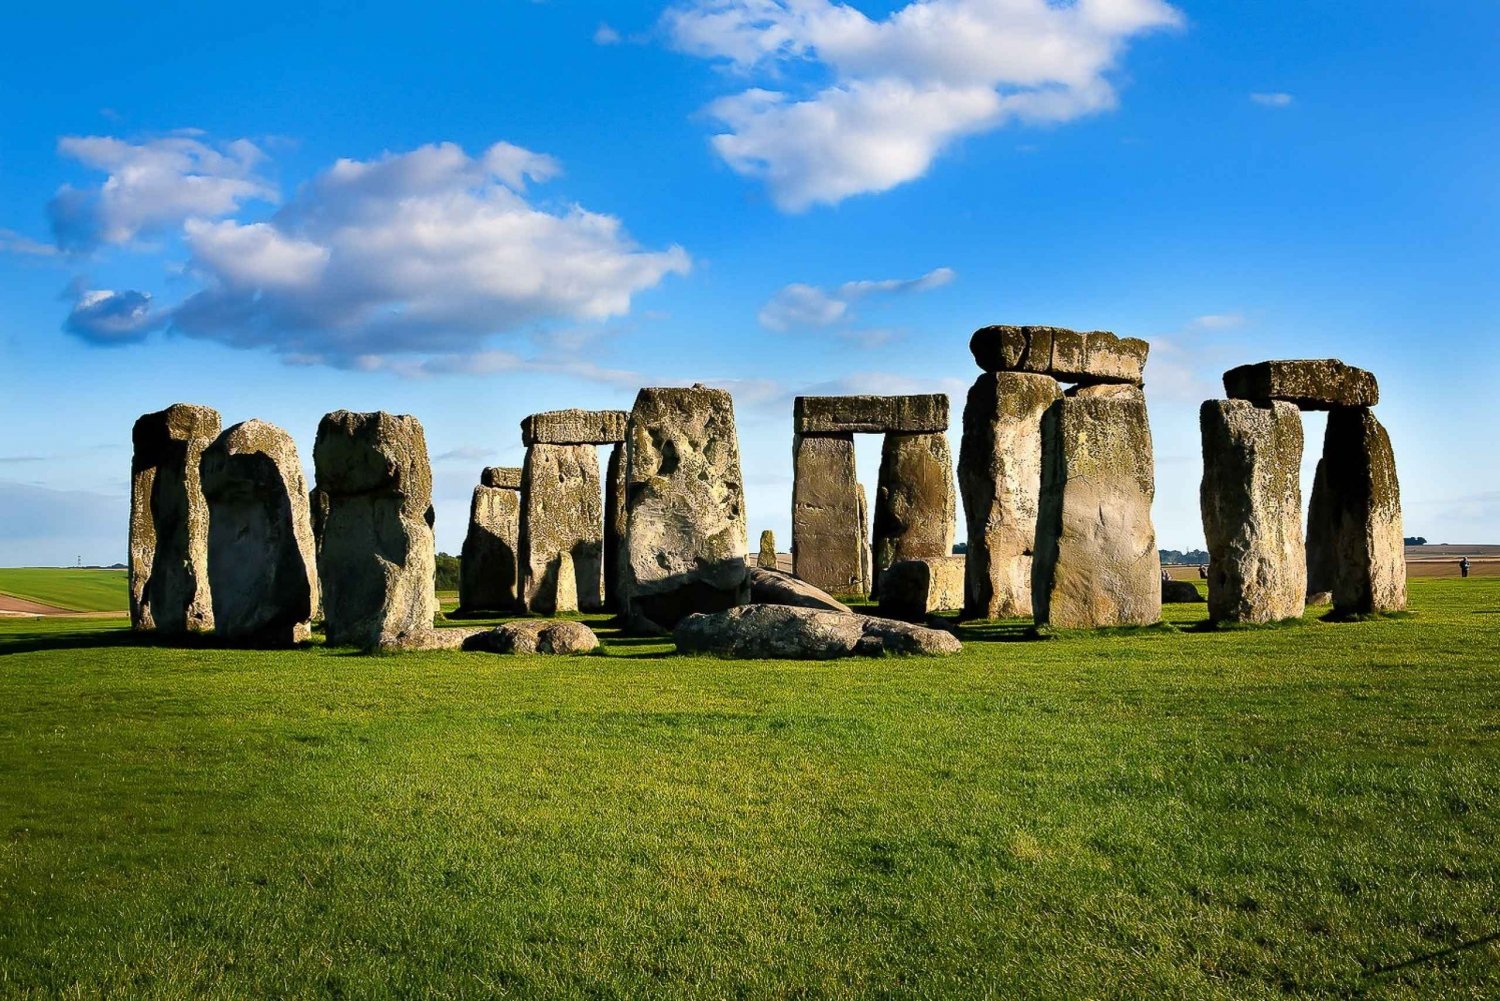 Ab London: Stonehenge und Bath Tagestour mit Ticket